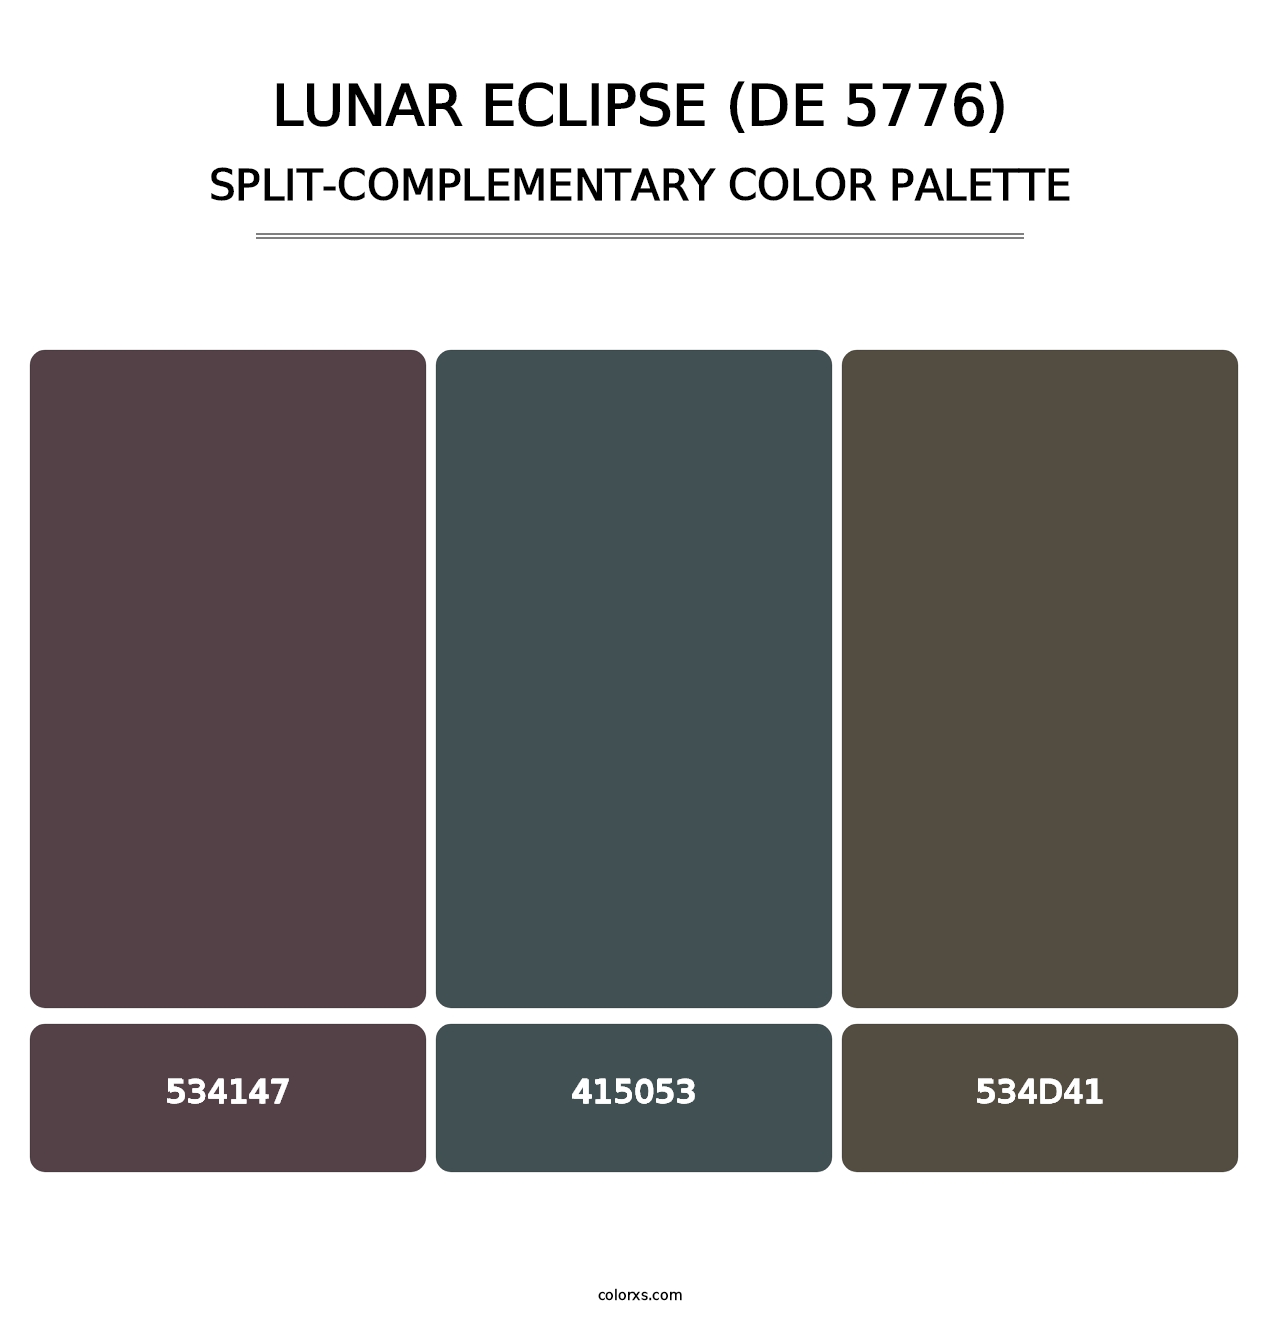 Lunar Eclipse (DE 5776) - Split-Complementary Color Palette